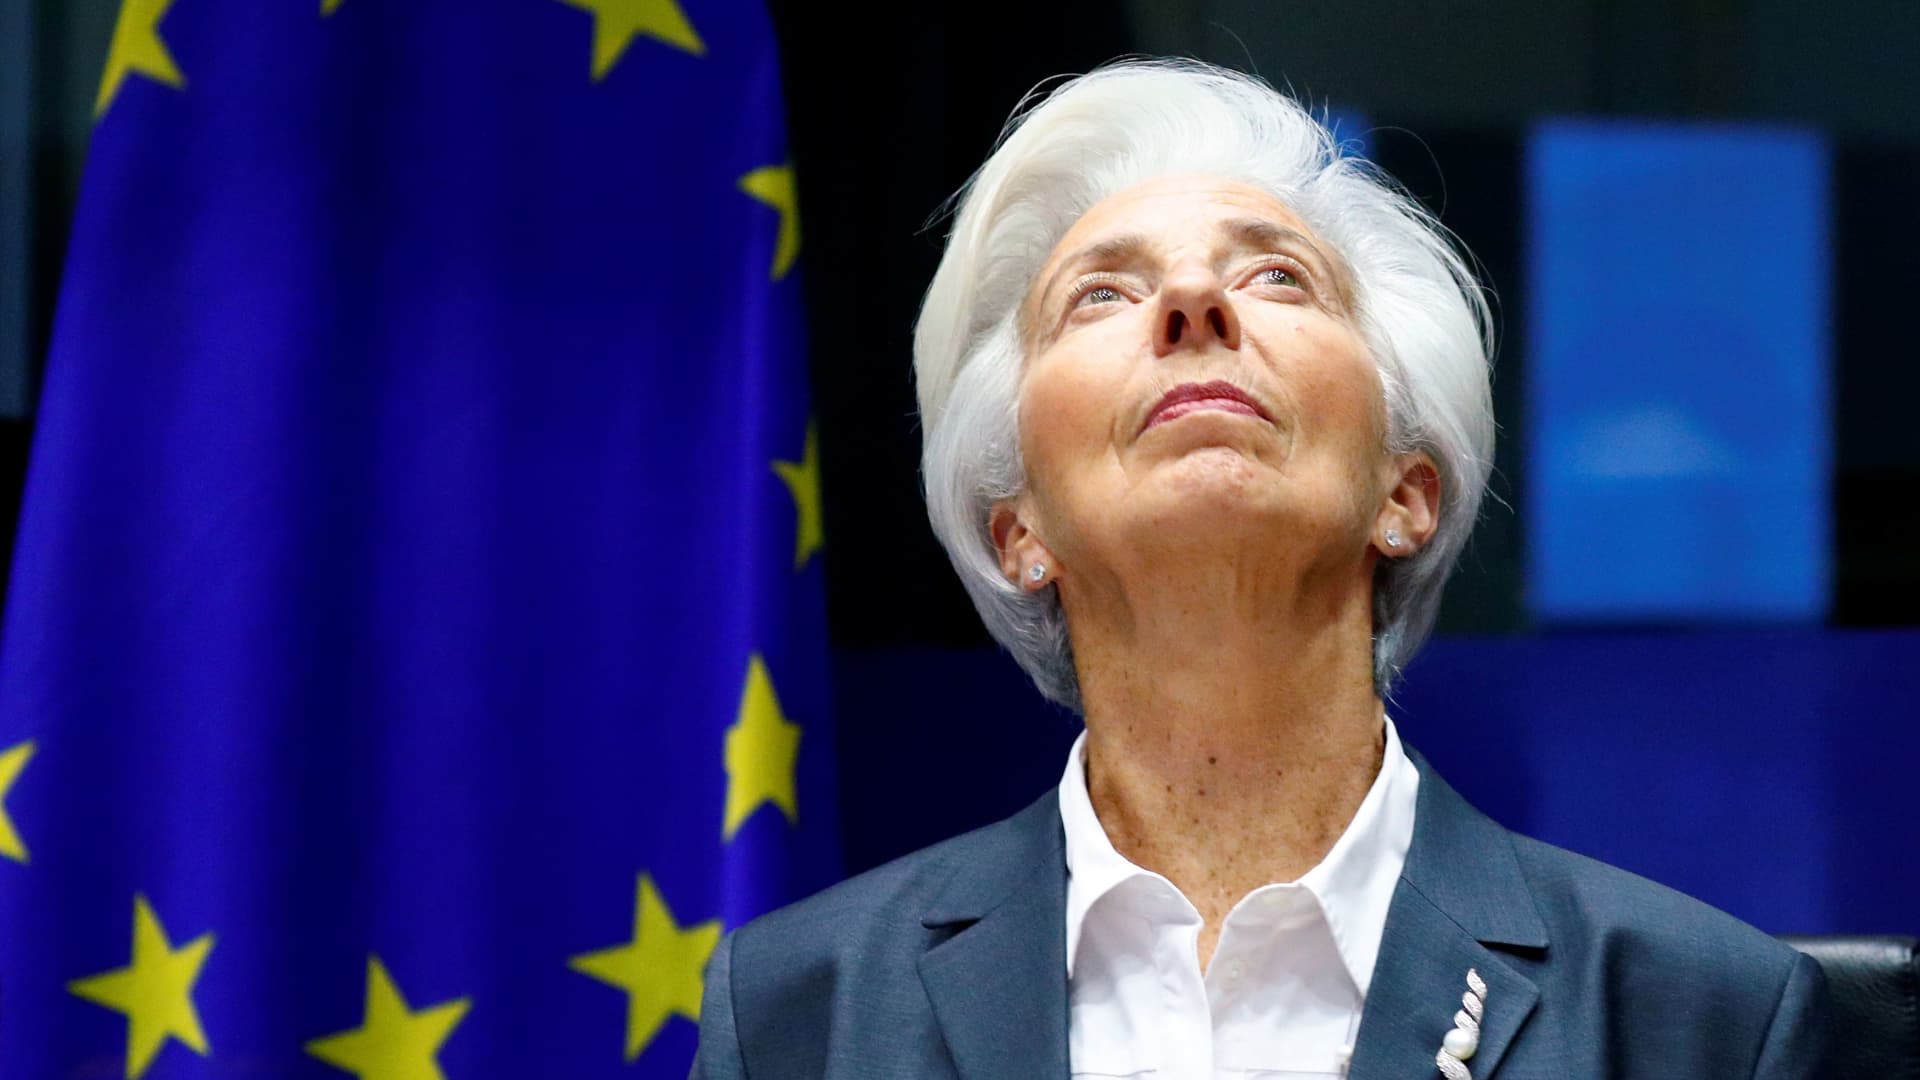 Los mercados europeos cerraron al alza después de que el Banco Central Europeo subiera las tasas de interés